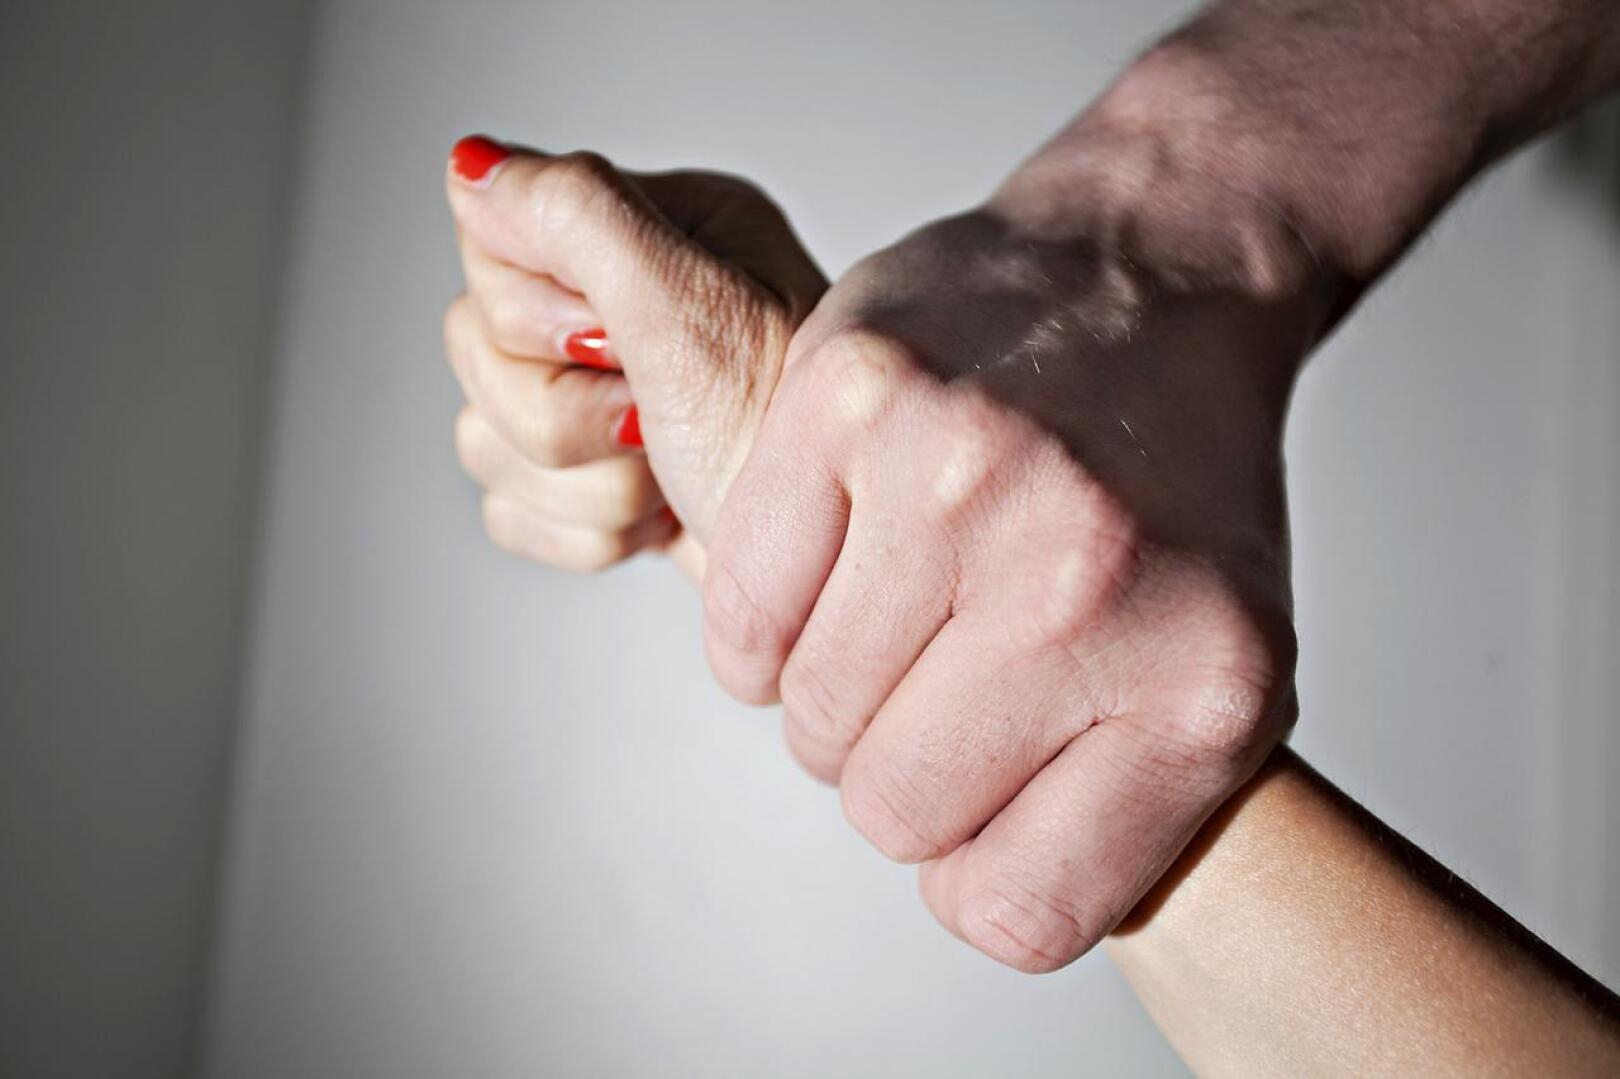 Parisuhdeväkivallasta puhutaan, kun nykyinen tai entinen puoliso tai seurustelukumppani harjoittaa tai uhkaa fyysisellä, henkisellä tai seksuaalisella väkivallalla.